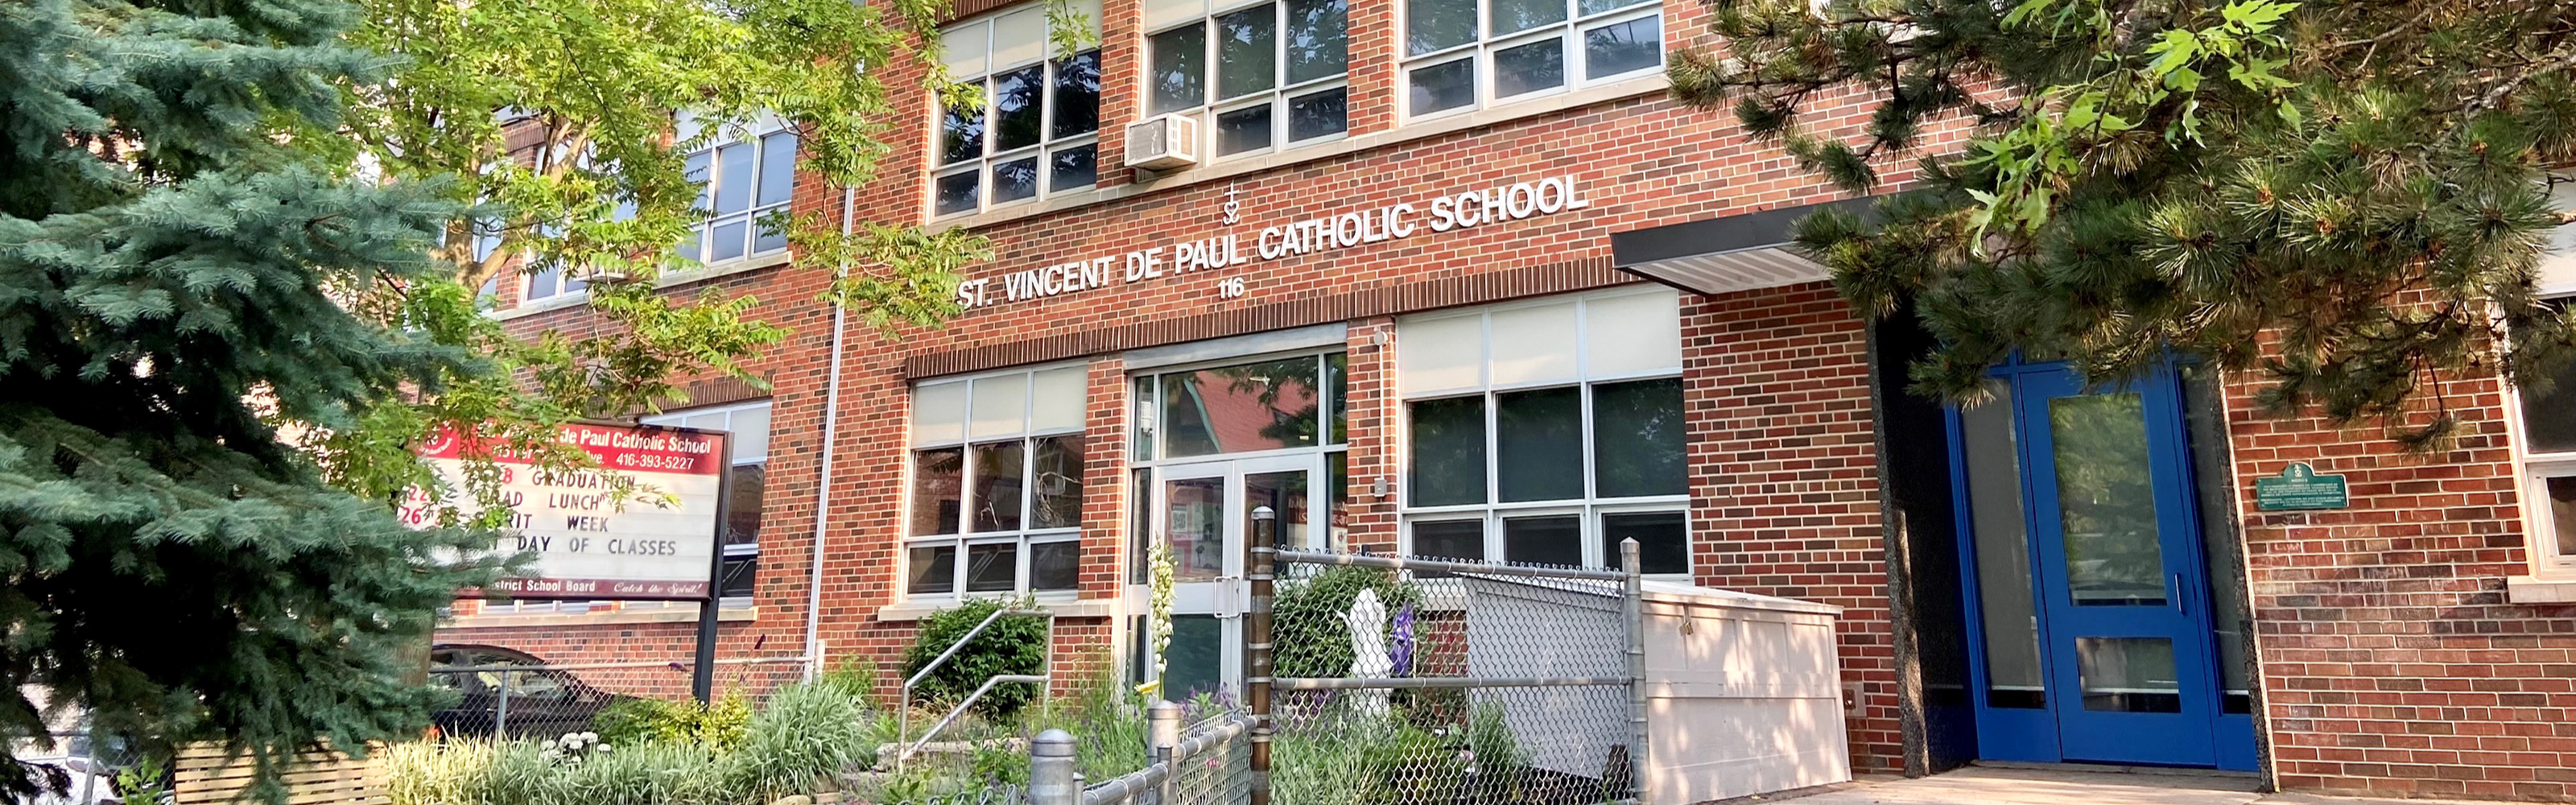 The front of the St. Vincent de Paul Catholic School building.